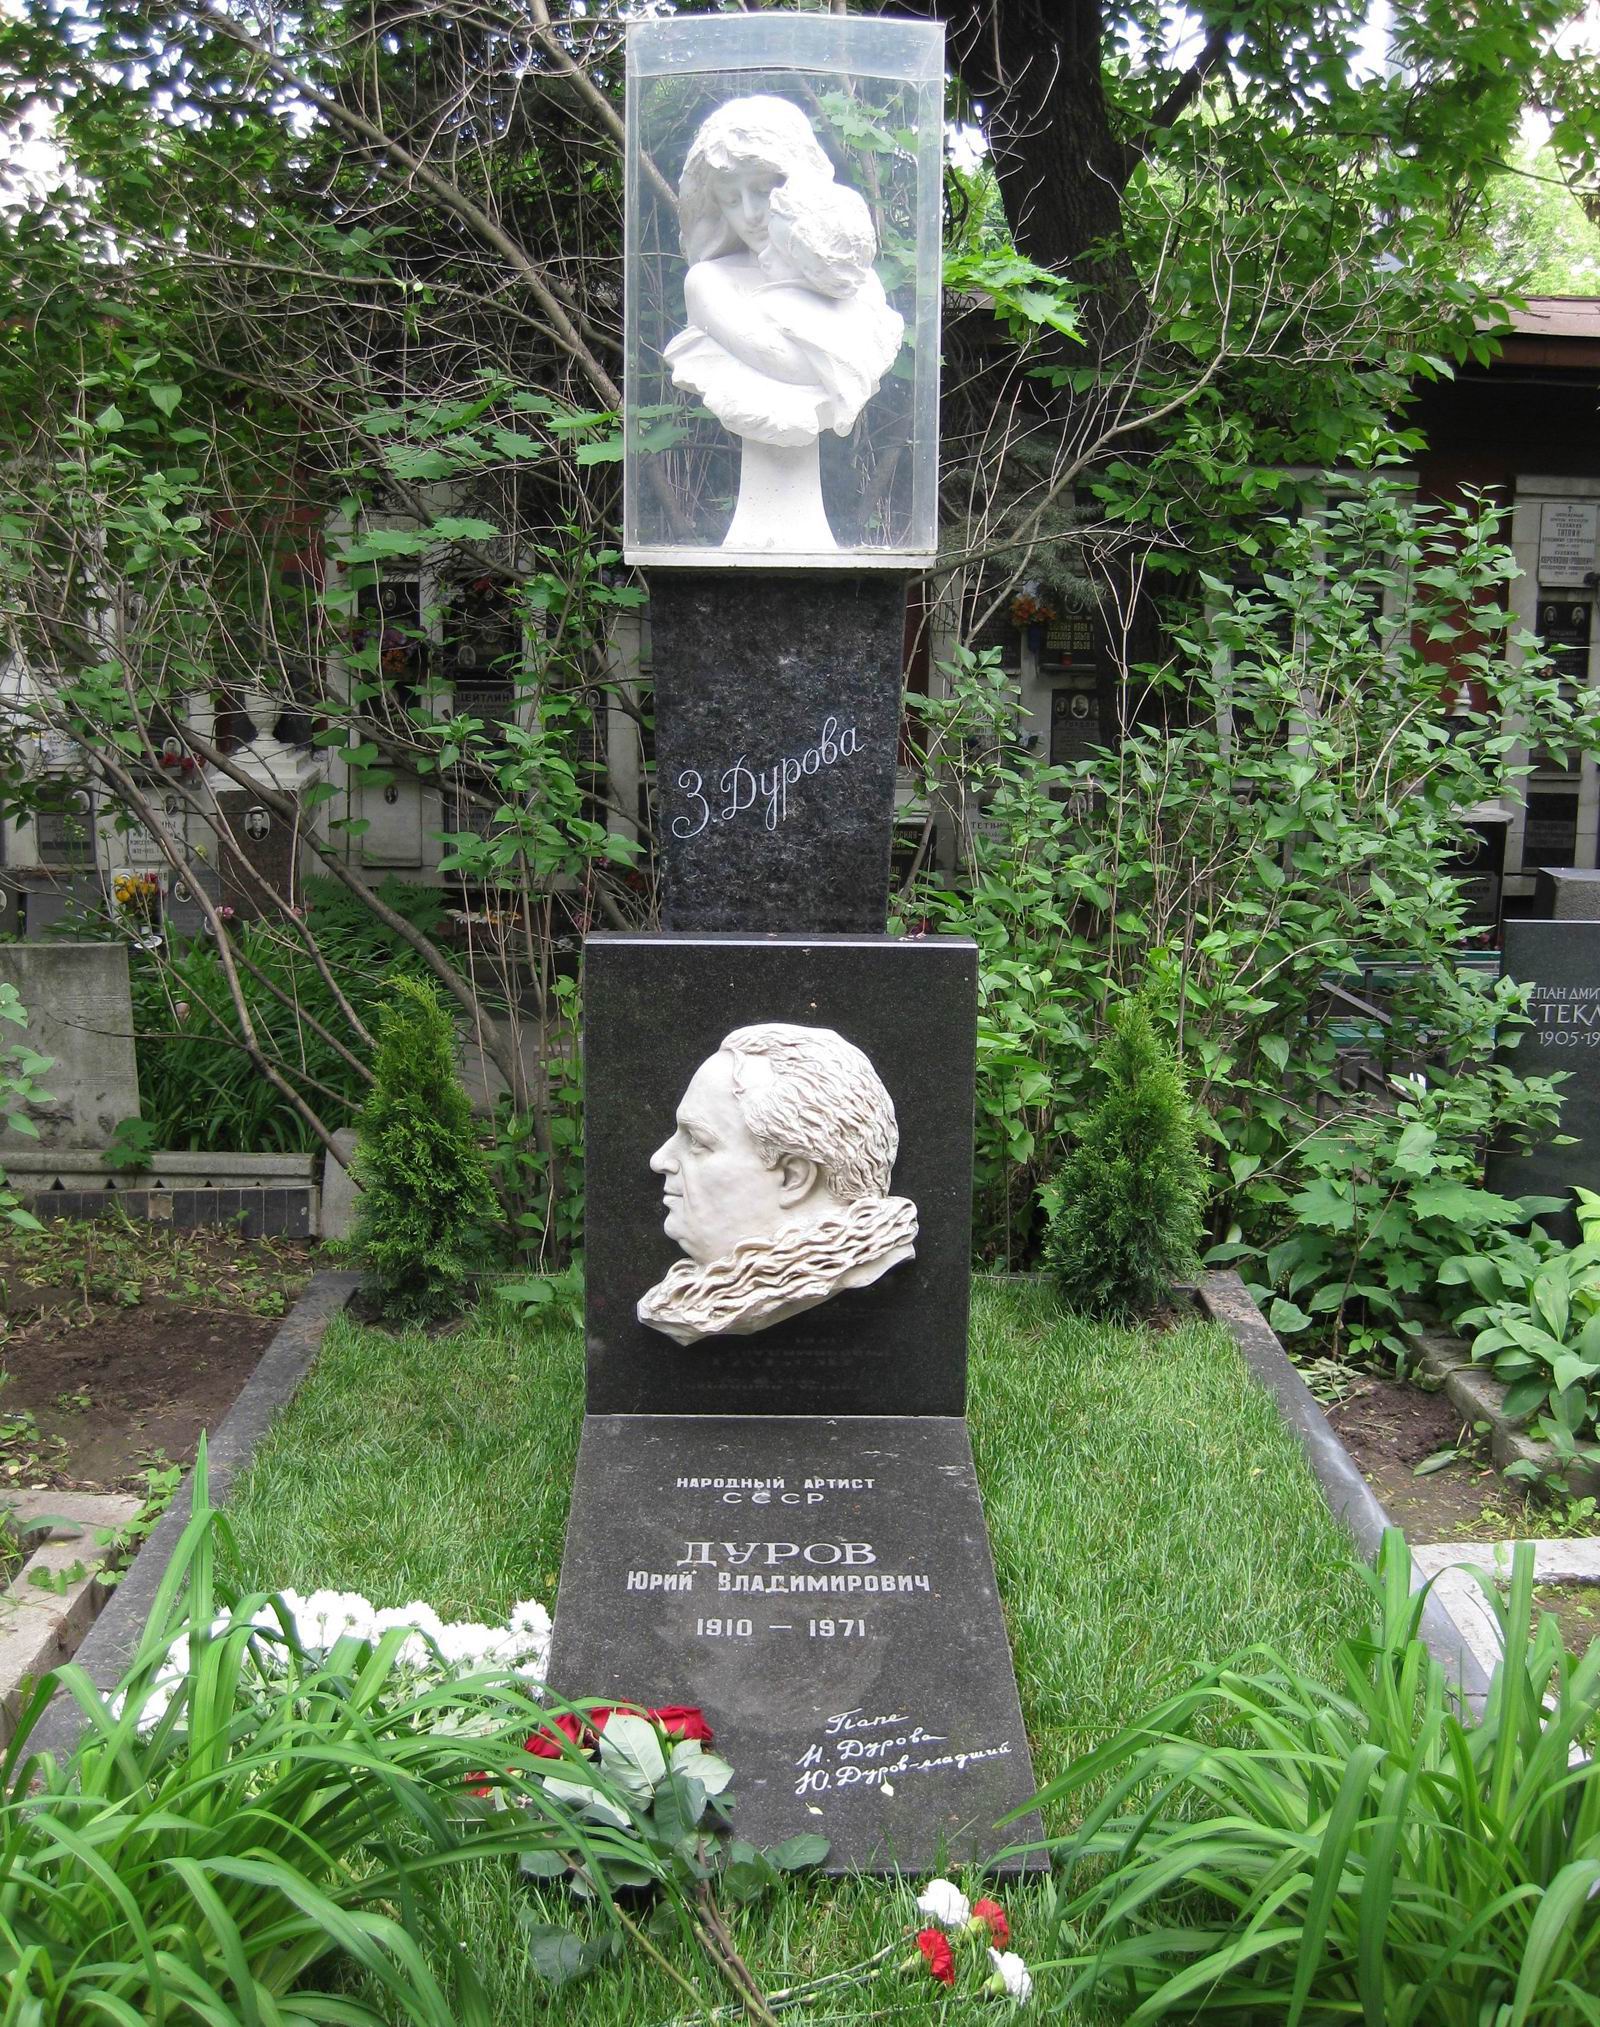 Памятник на могиле Дурова Ю.В. (1910–1971), ск. П.Шапиро, З.Т.Дуровой по эскизу С.Конёнкова, на Новодевичьем кладбище (2–40–20).